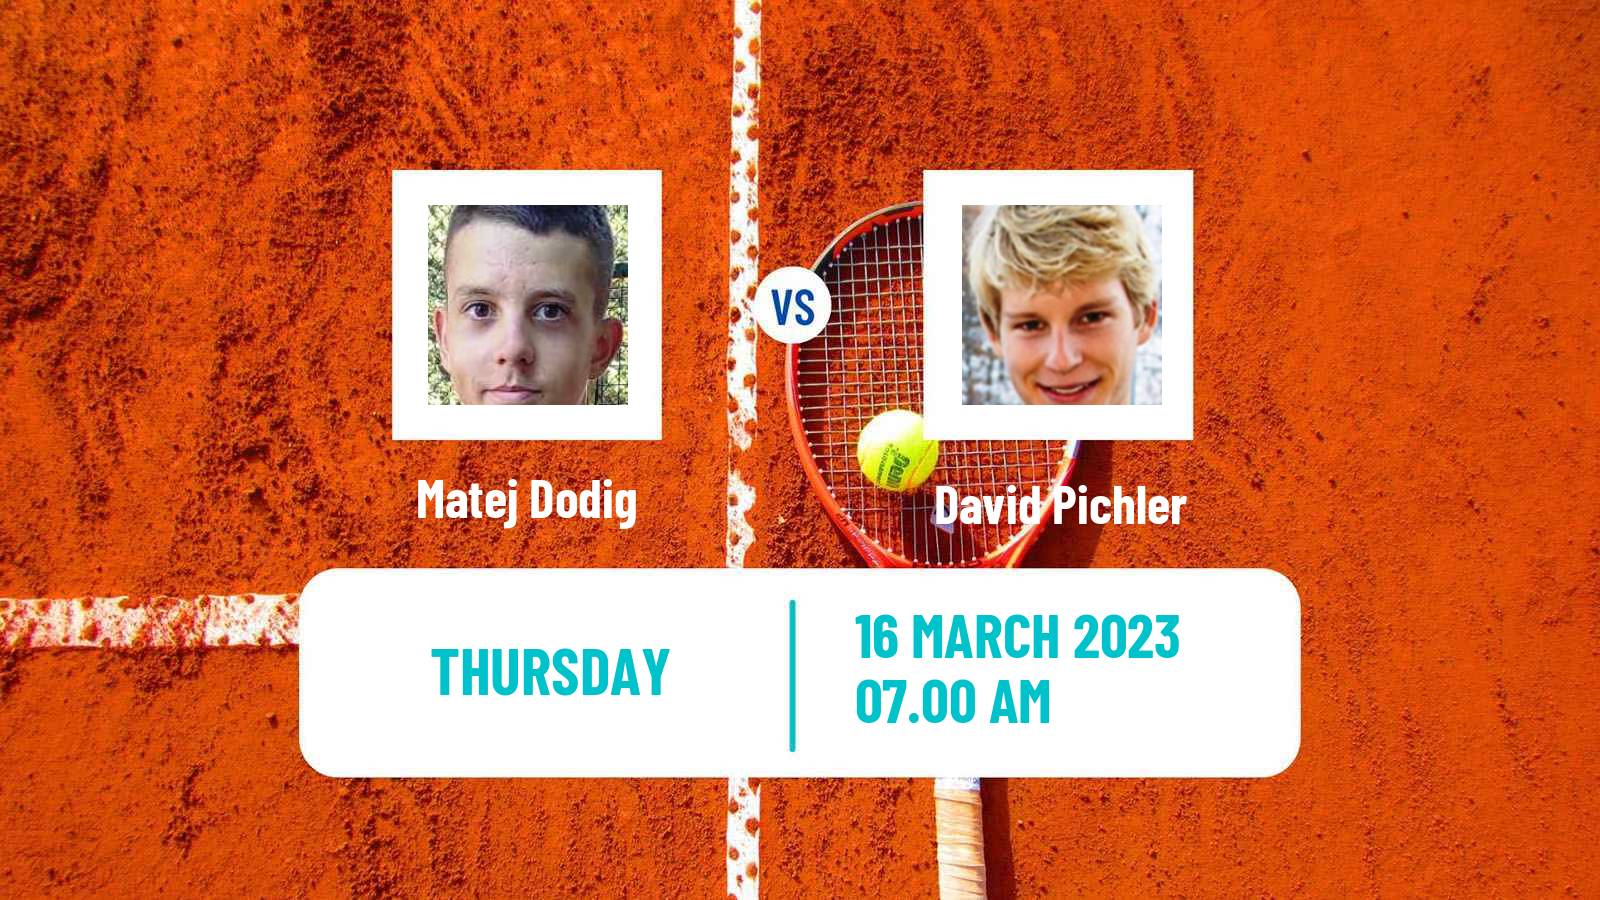 Tennis ITF Tournaments Matej Dodig - David Pichler